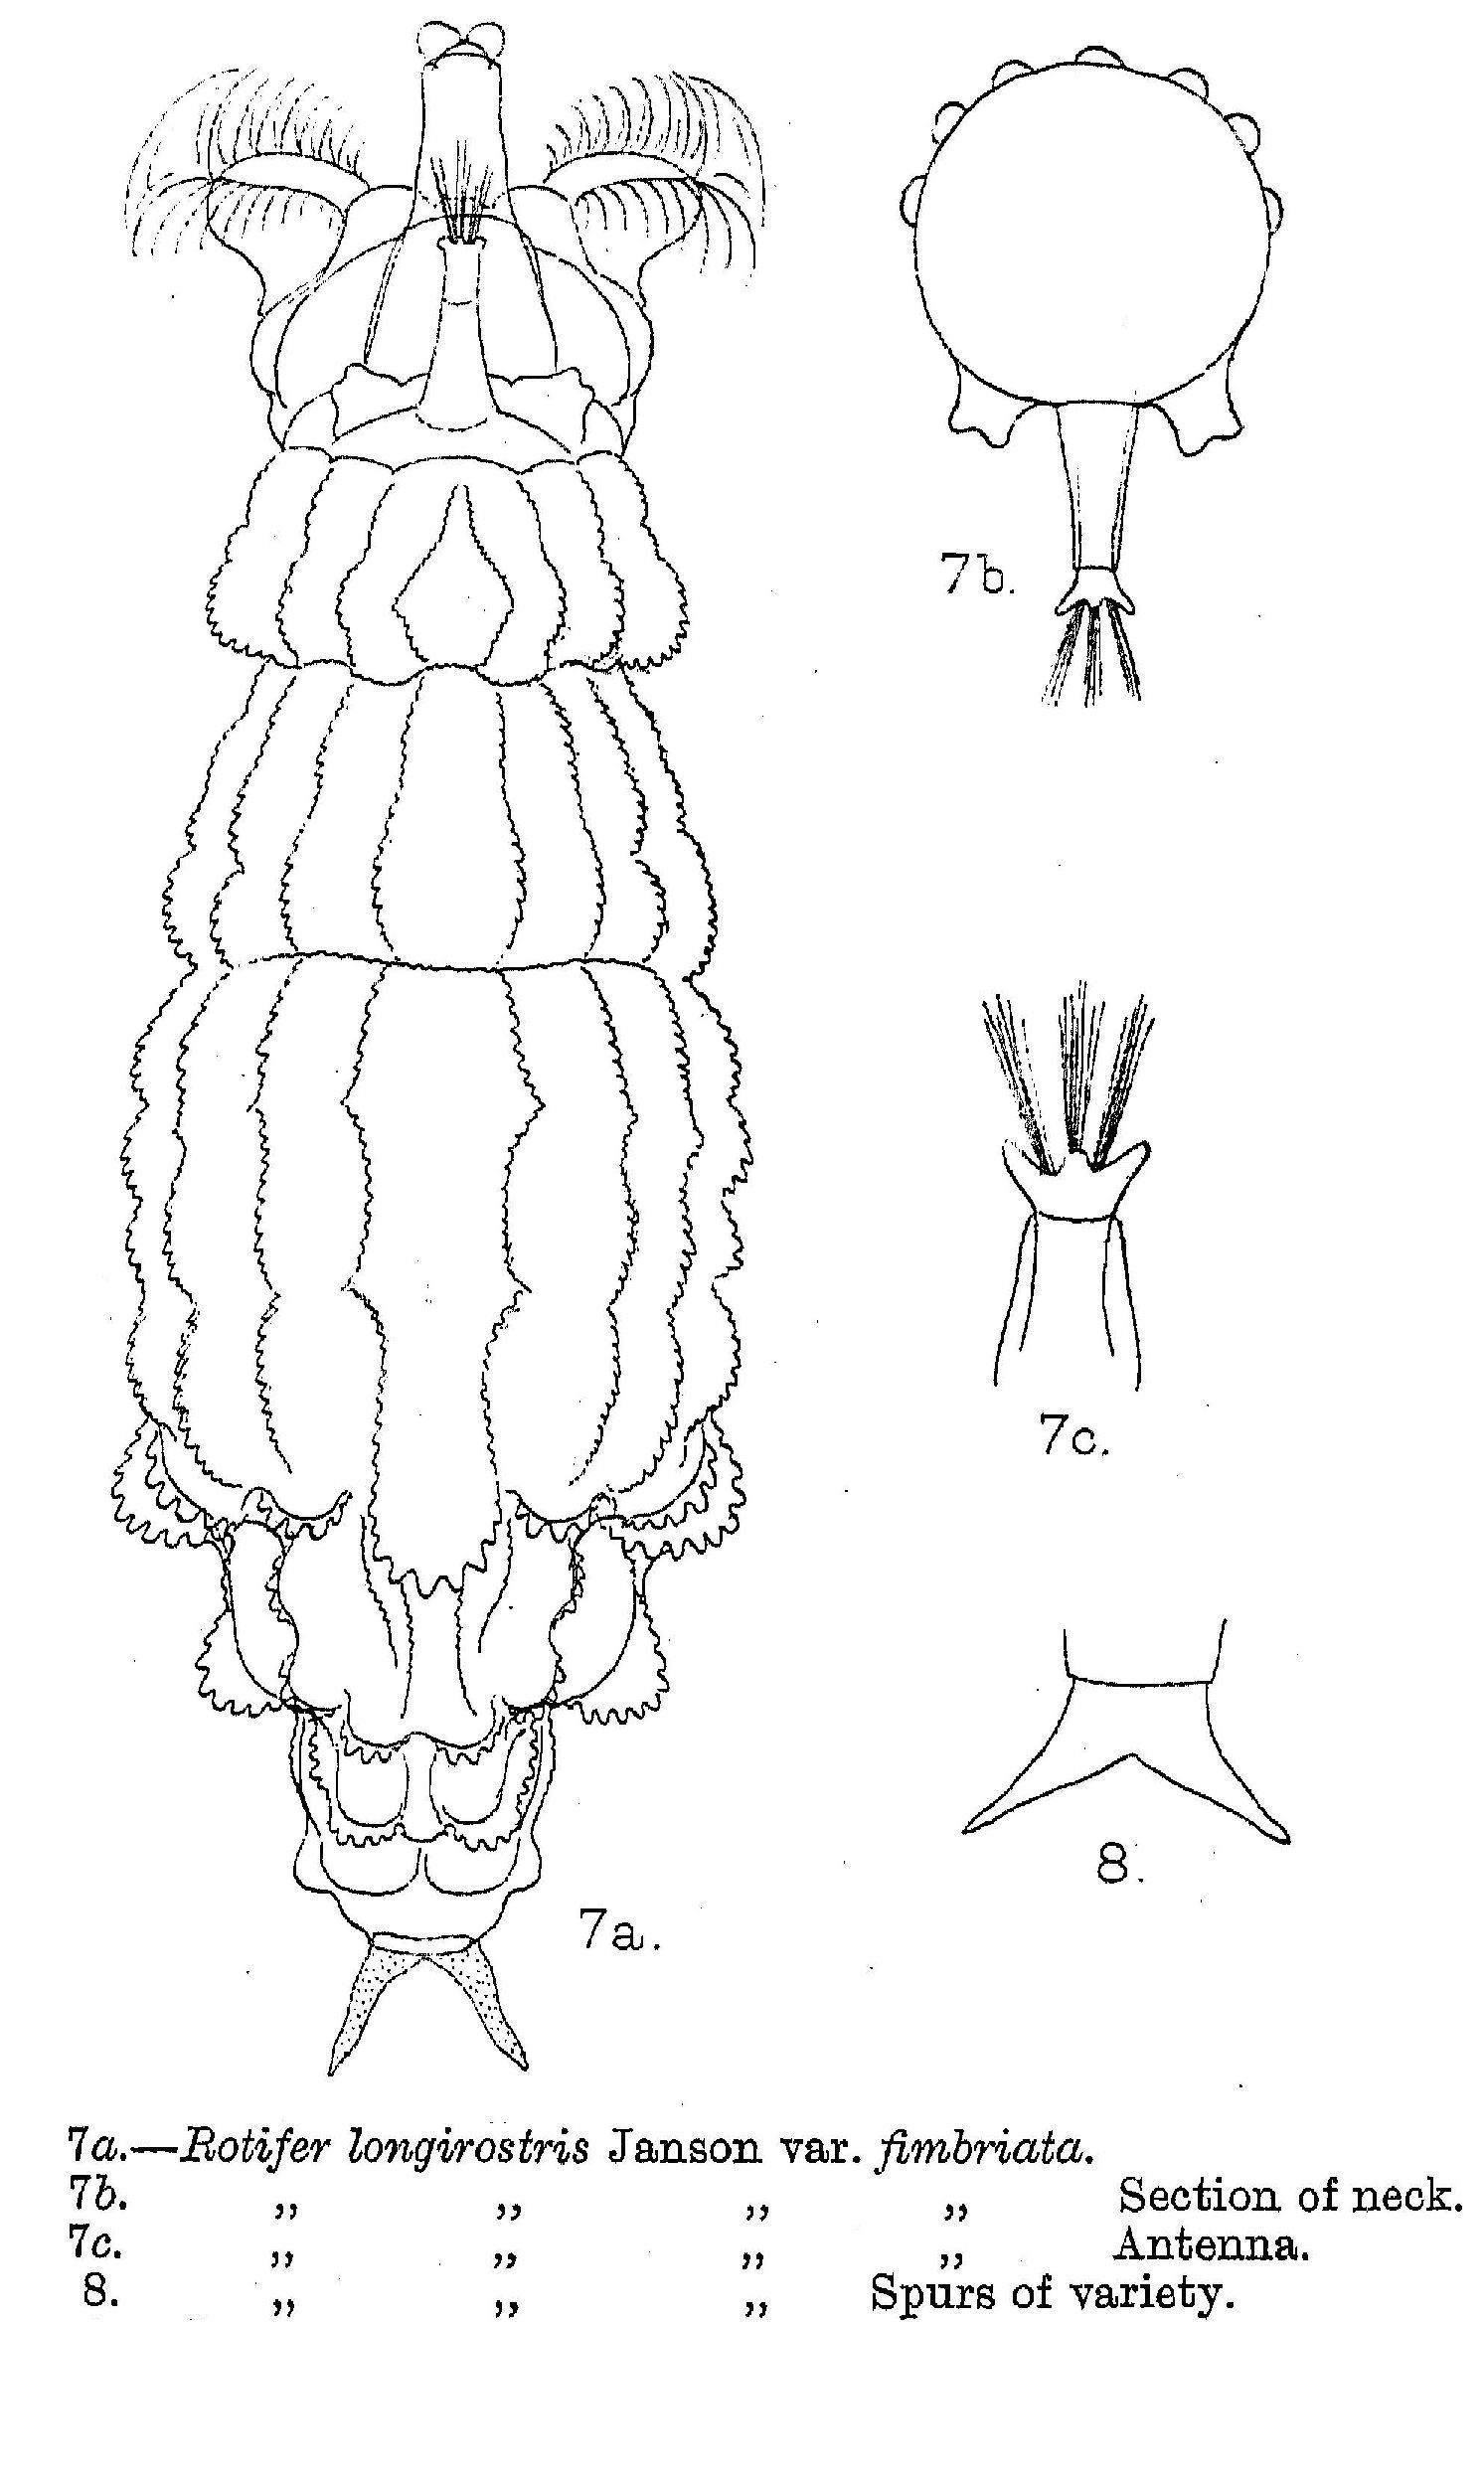 Image of Rotaria sordida fimbriata (Murray 1893)